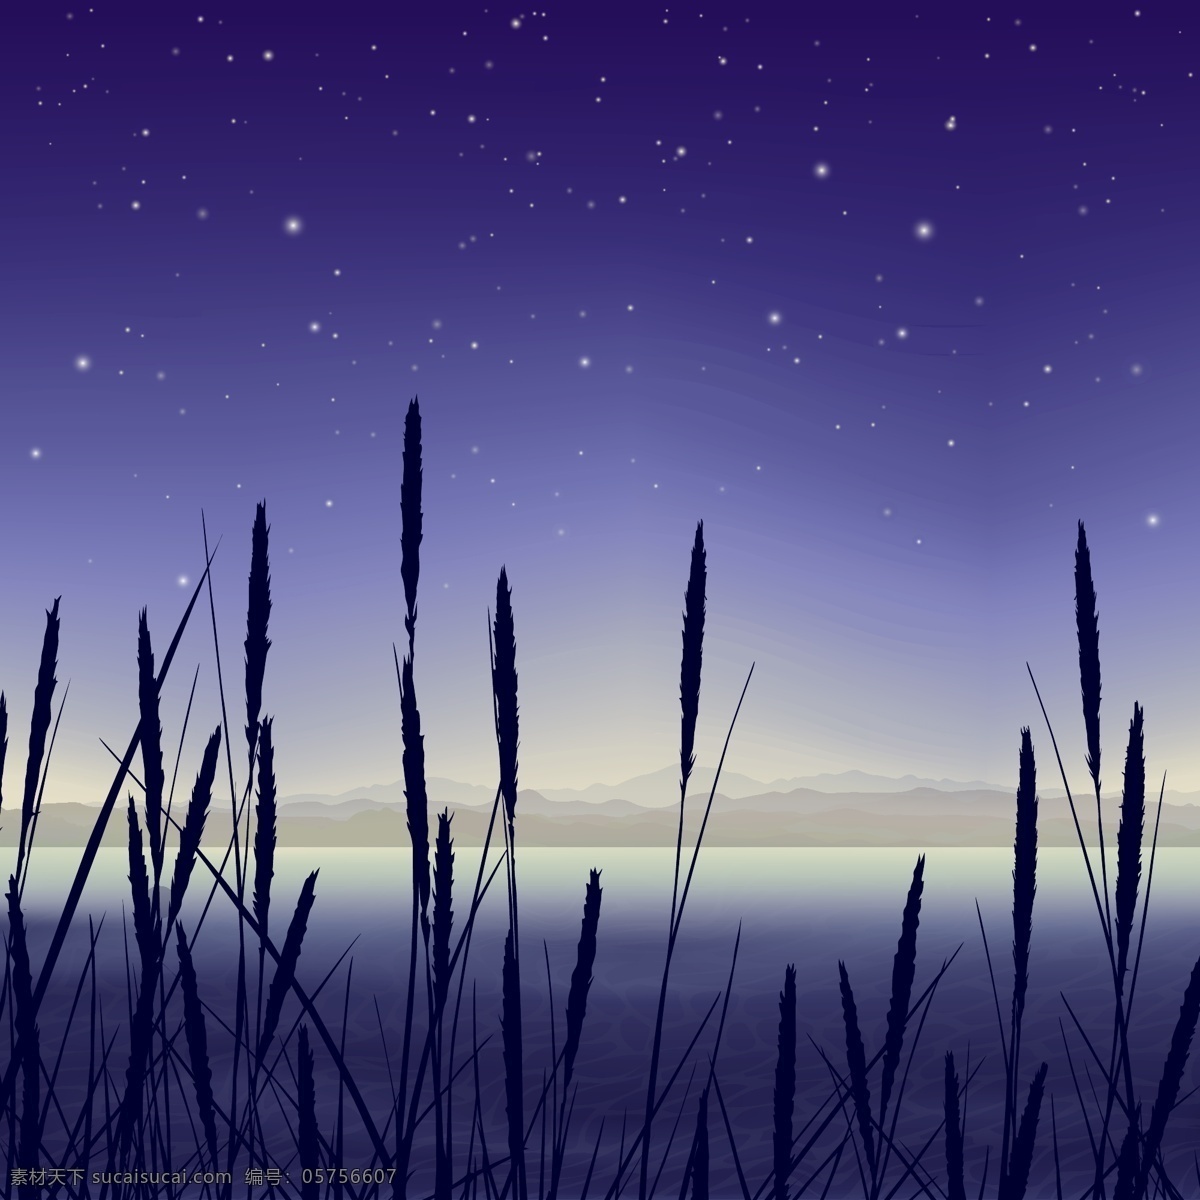 沼泽地 夜间 景观 背景 明星 树叶 自然 天空 风景 草地 空间 剪影 植物 装饰 灯光 夜晚 公园 阴影 辉光 湖泊 场景 宇宙